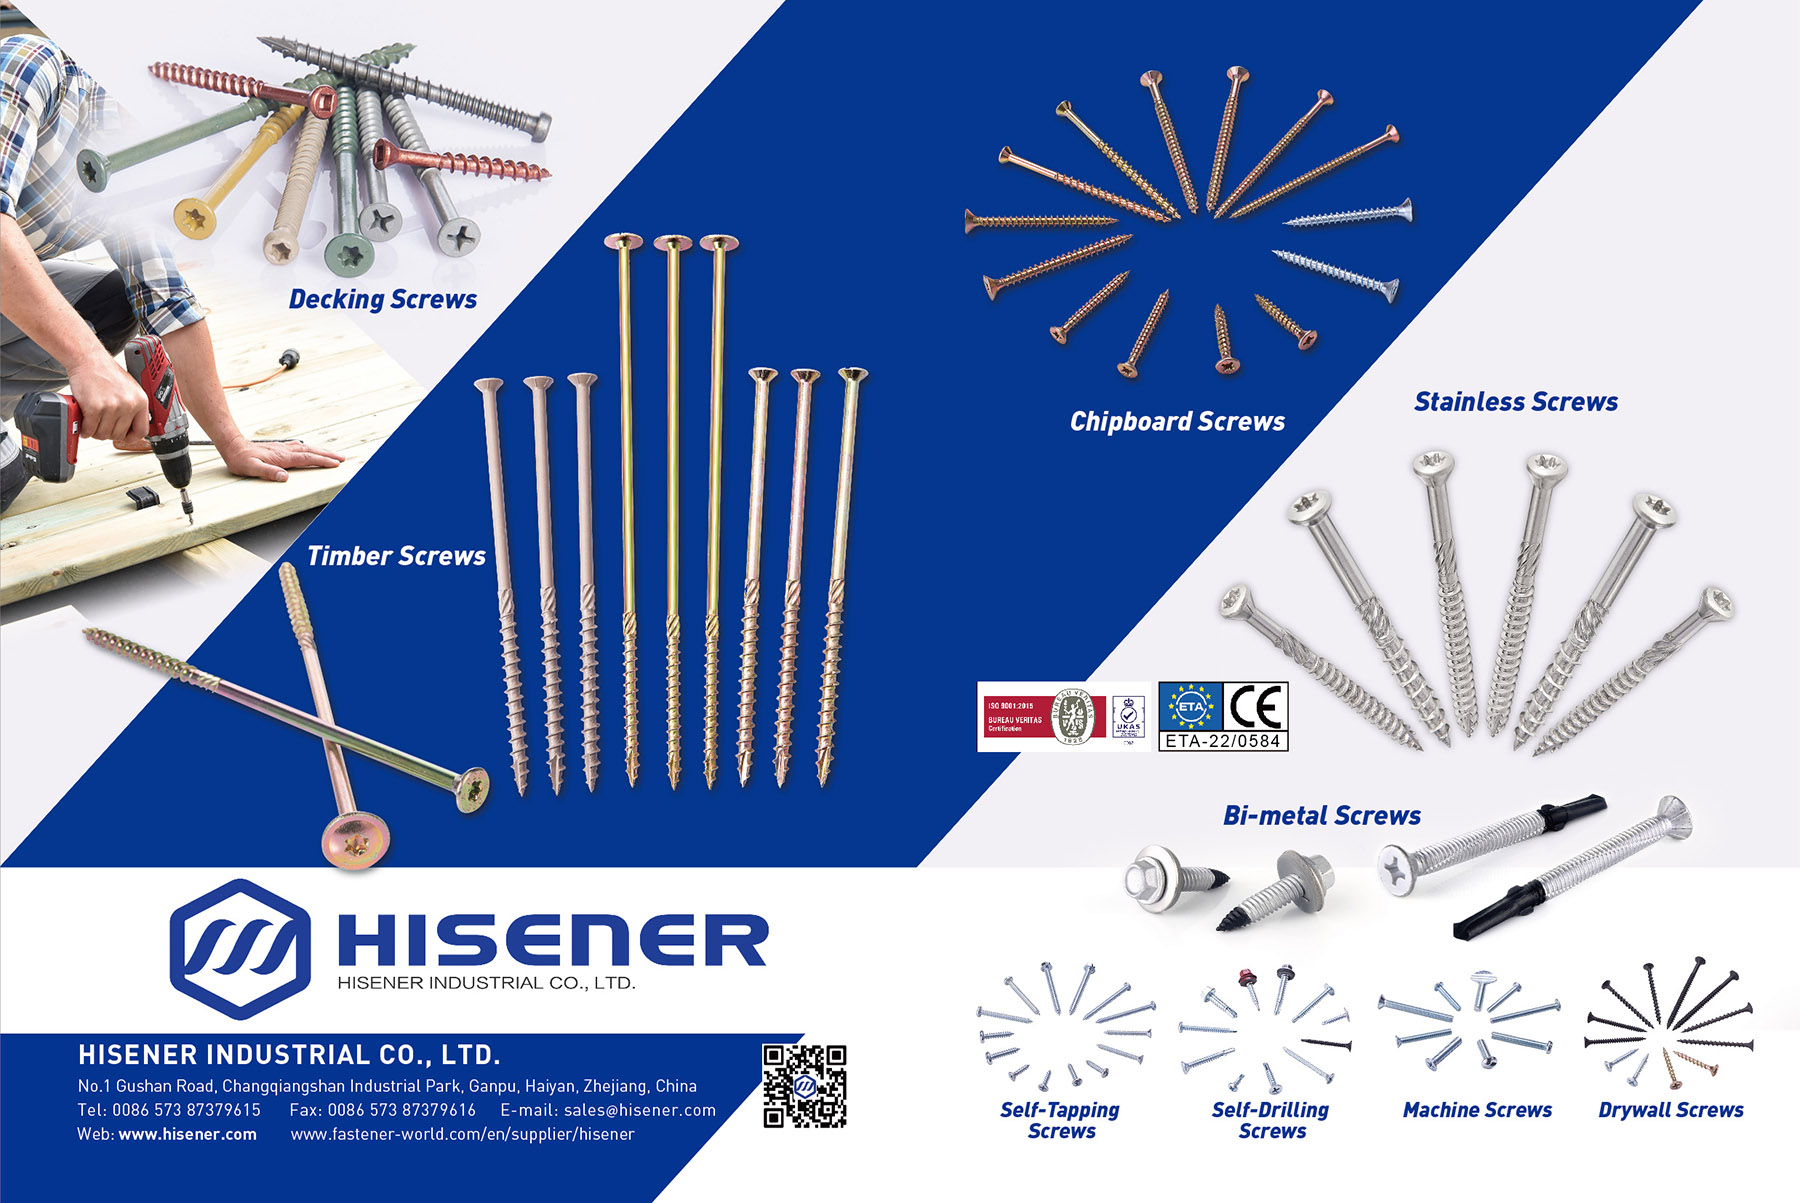 HISENER INDUSTRIAL CO., LTD. , Decking Screws,Timber Screws,Chipboard Screws, Stainless Screws, Concrete Screws,Dowel Screws,Self-Tapping Screws, Self-Drilling Screws, Machine Screws,Drywall Screws